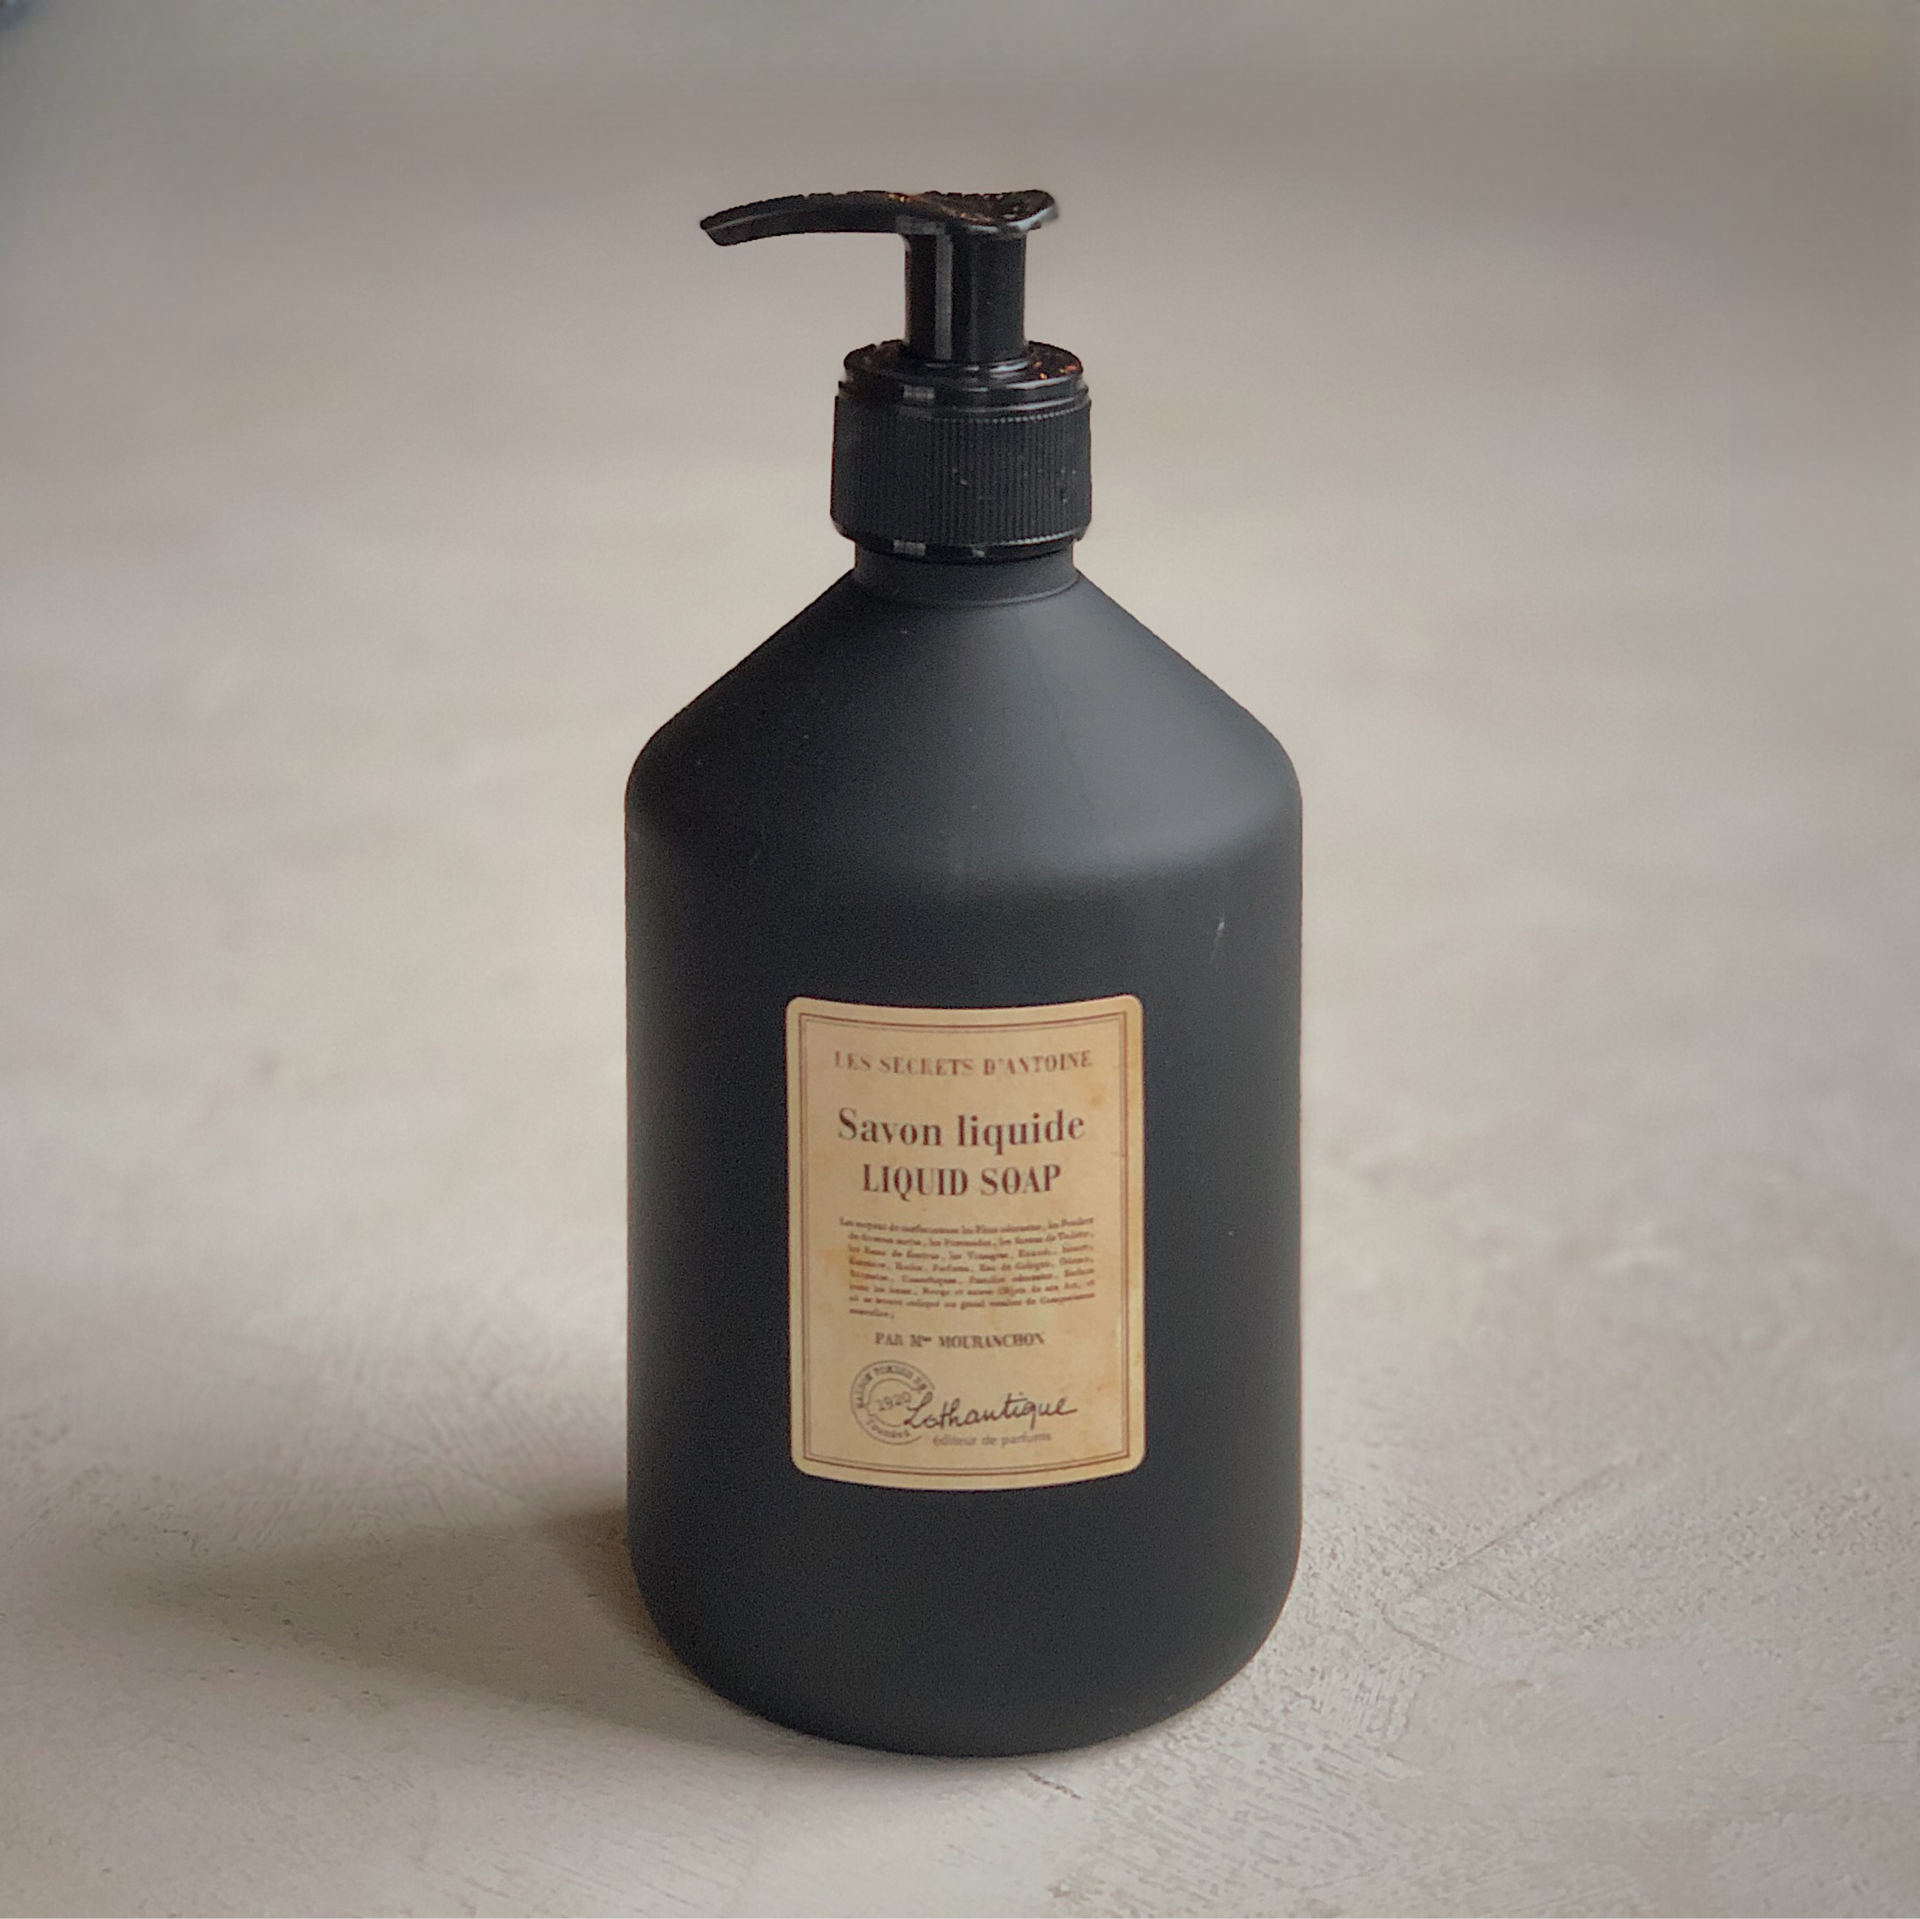 LOTHANTIC HAND SOAP - Les Secrets d'Antoine